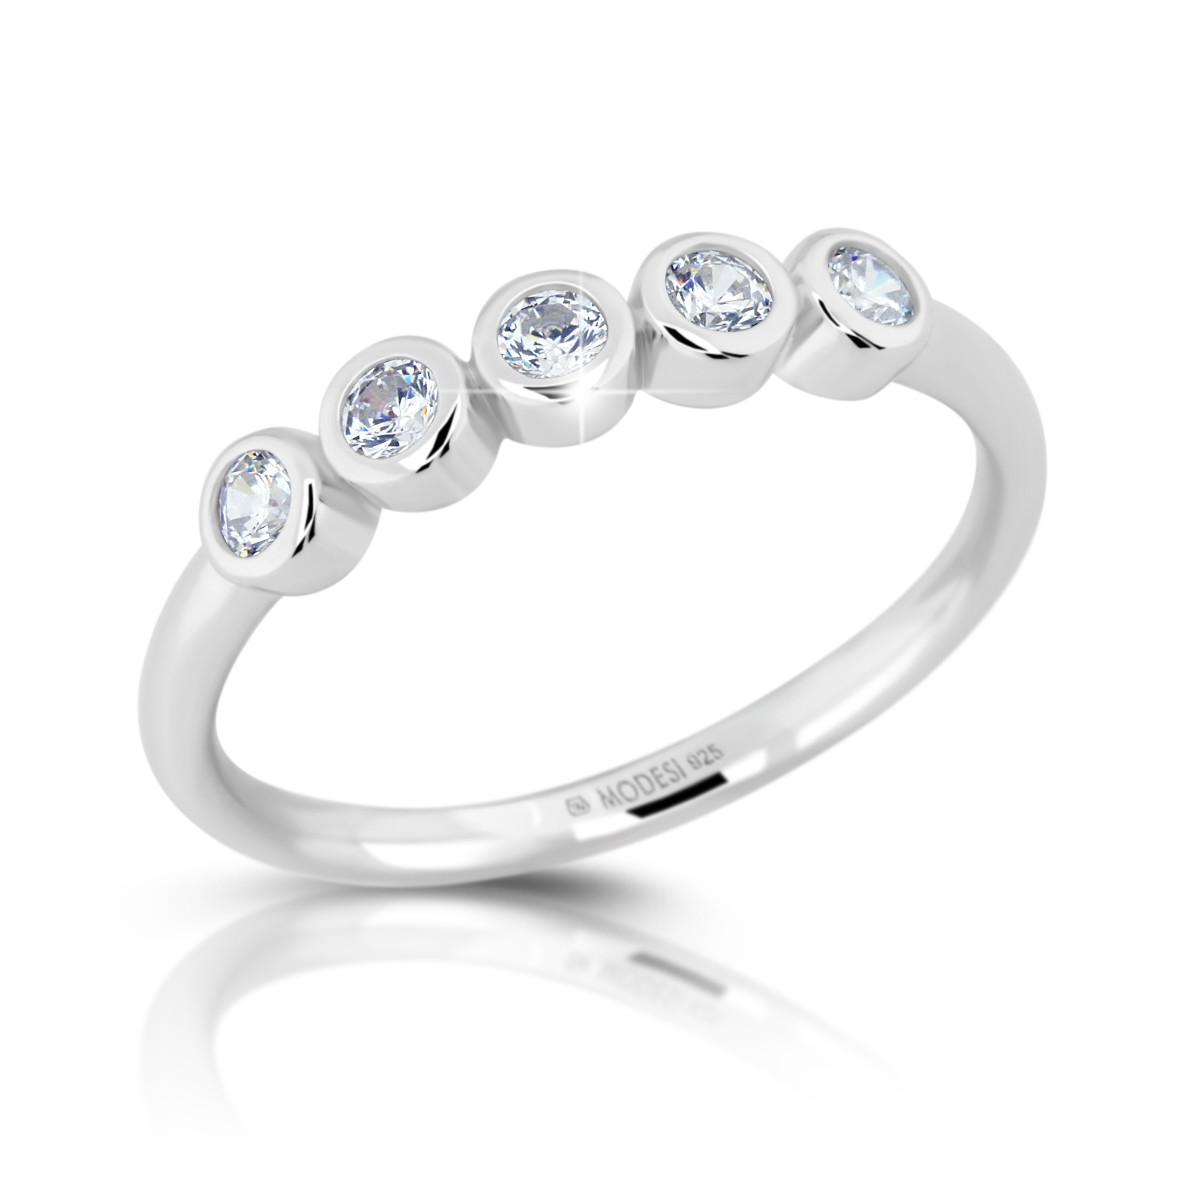 Modesi Blyštivý stříbrný prsten se zirkony M01016 50 mm